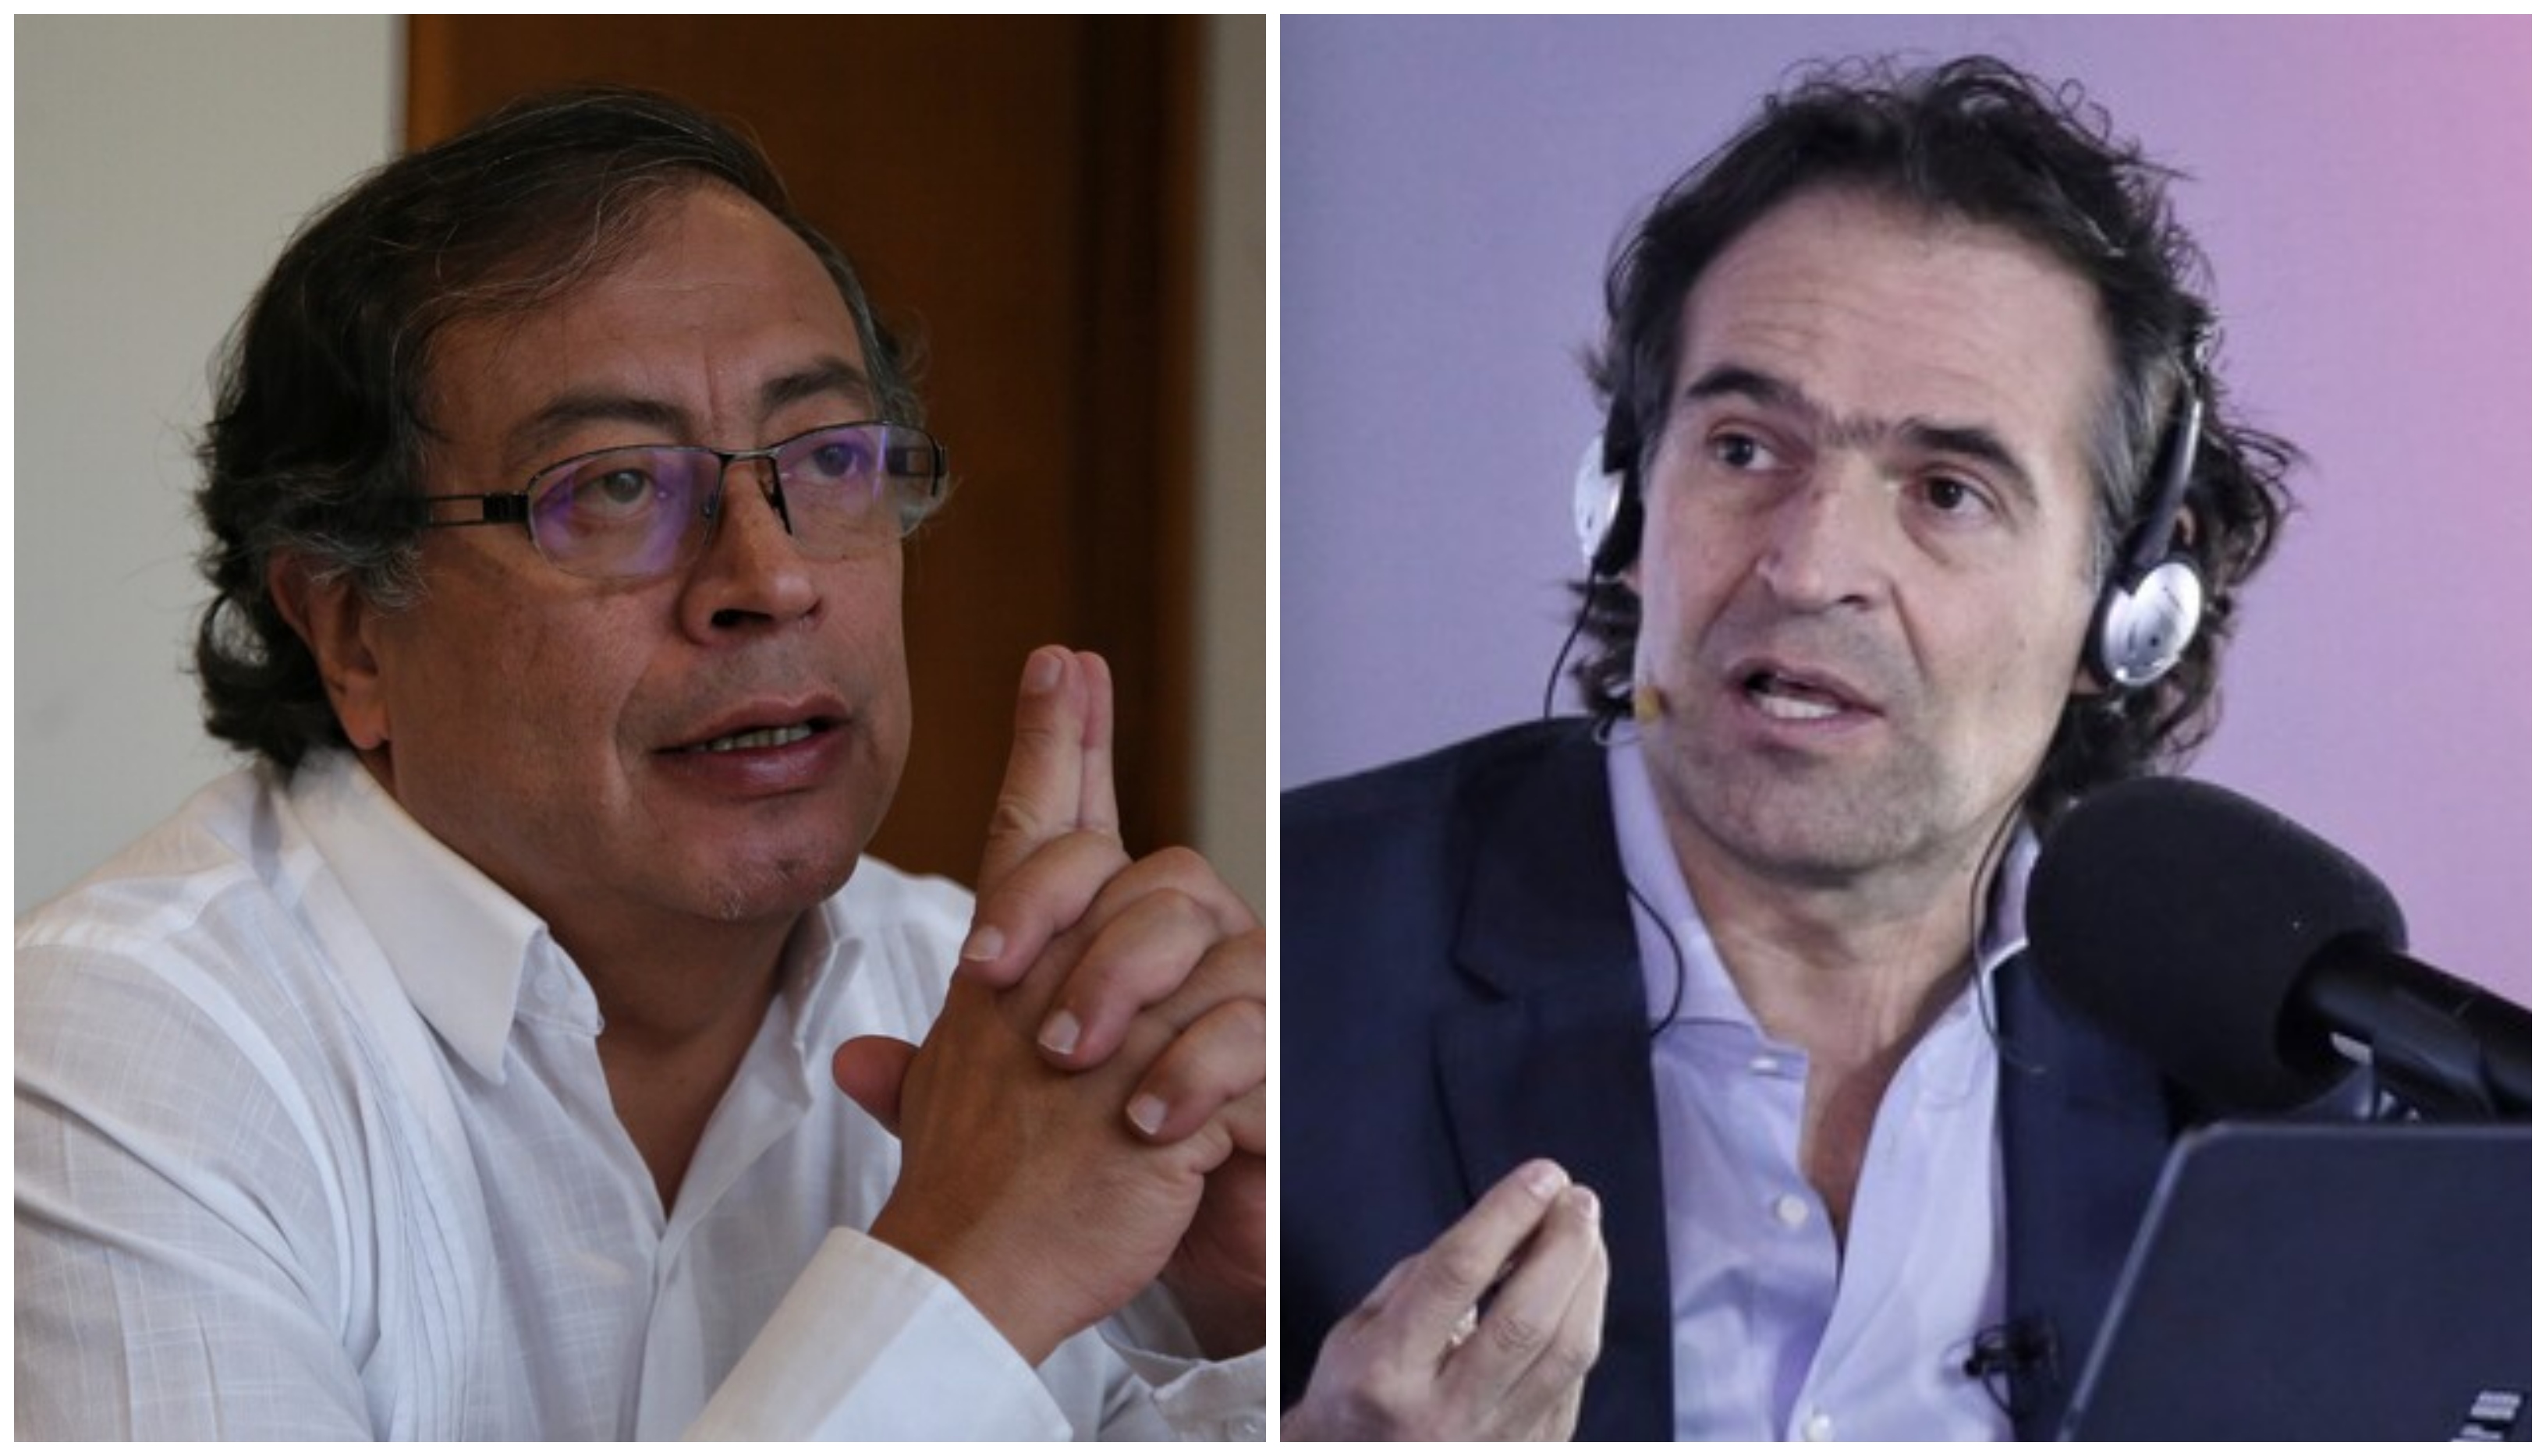 La información falsa sobre Petro y ‘Fico’ se tomó la campaña presidencial colombiana según un análisis de AFP